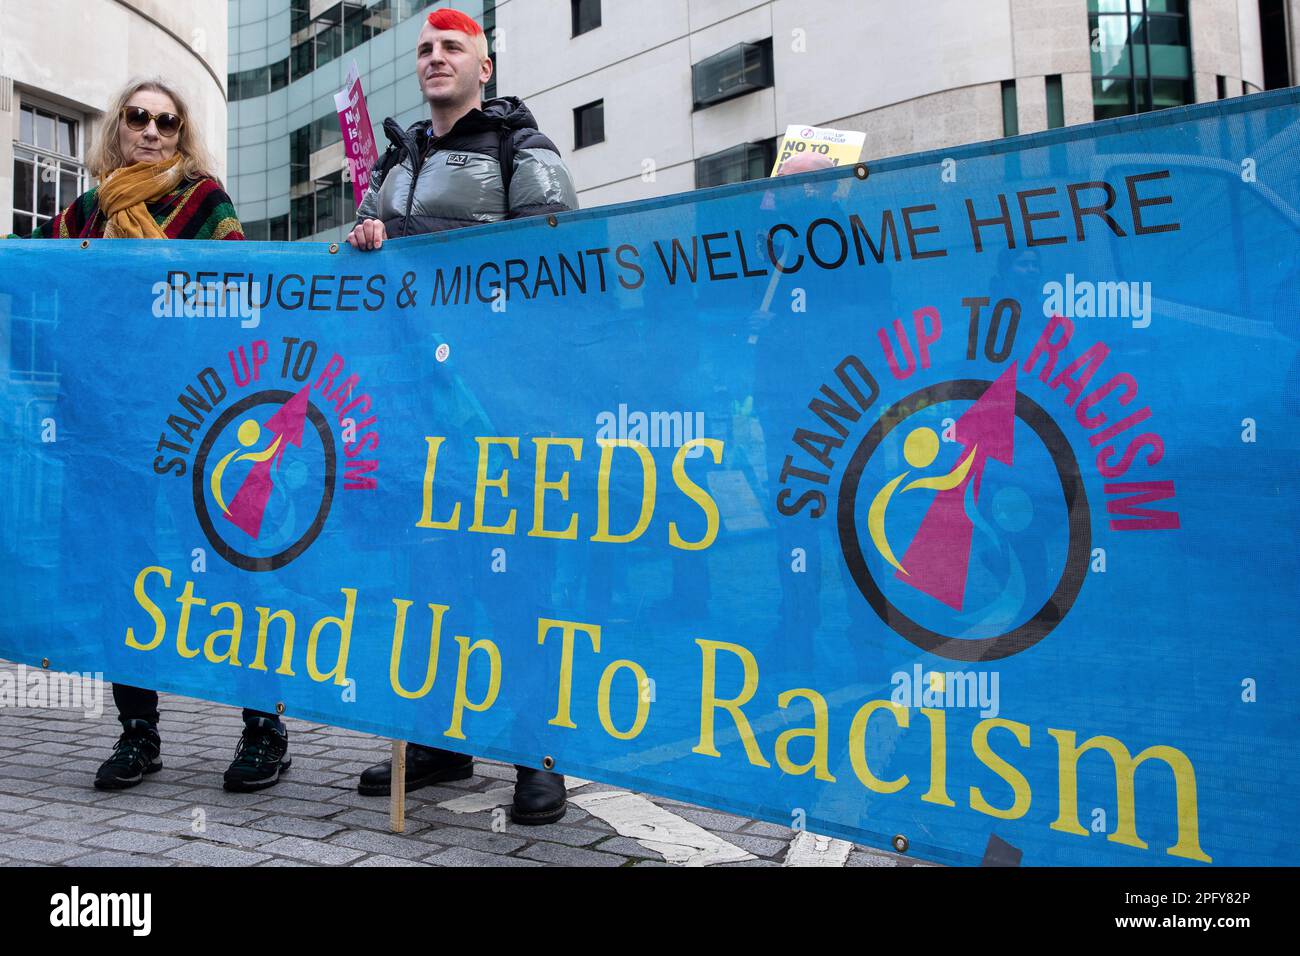 Les militants anti-racistes se réunissent à l'extérieur de la BBC, dans le cadre d'une manifestation "la résistance au racisme" organisée par Stand Up to racisme and the Trades Union Congress (TUC) dans le cadre d'une journée mondiale d'action contre le racisme, le 18 mars 2023 à Londres, au Royaume-Uni. Les orateurs ont exprimé leur colère et leur opposition à la loi controversée sur les migrations illégales du gouvernement. (Photo de Mark Kerrison/In Pictures via Getty Images) Banque D'Images